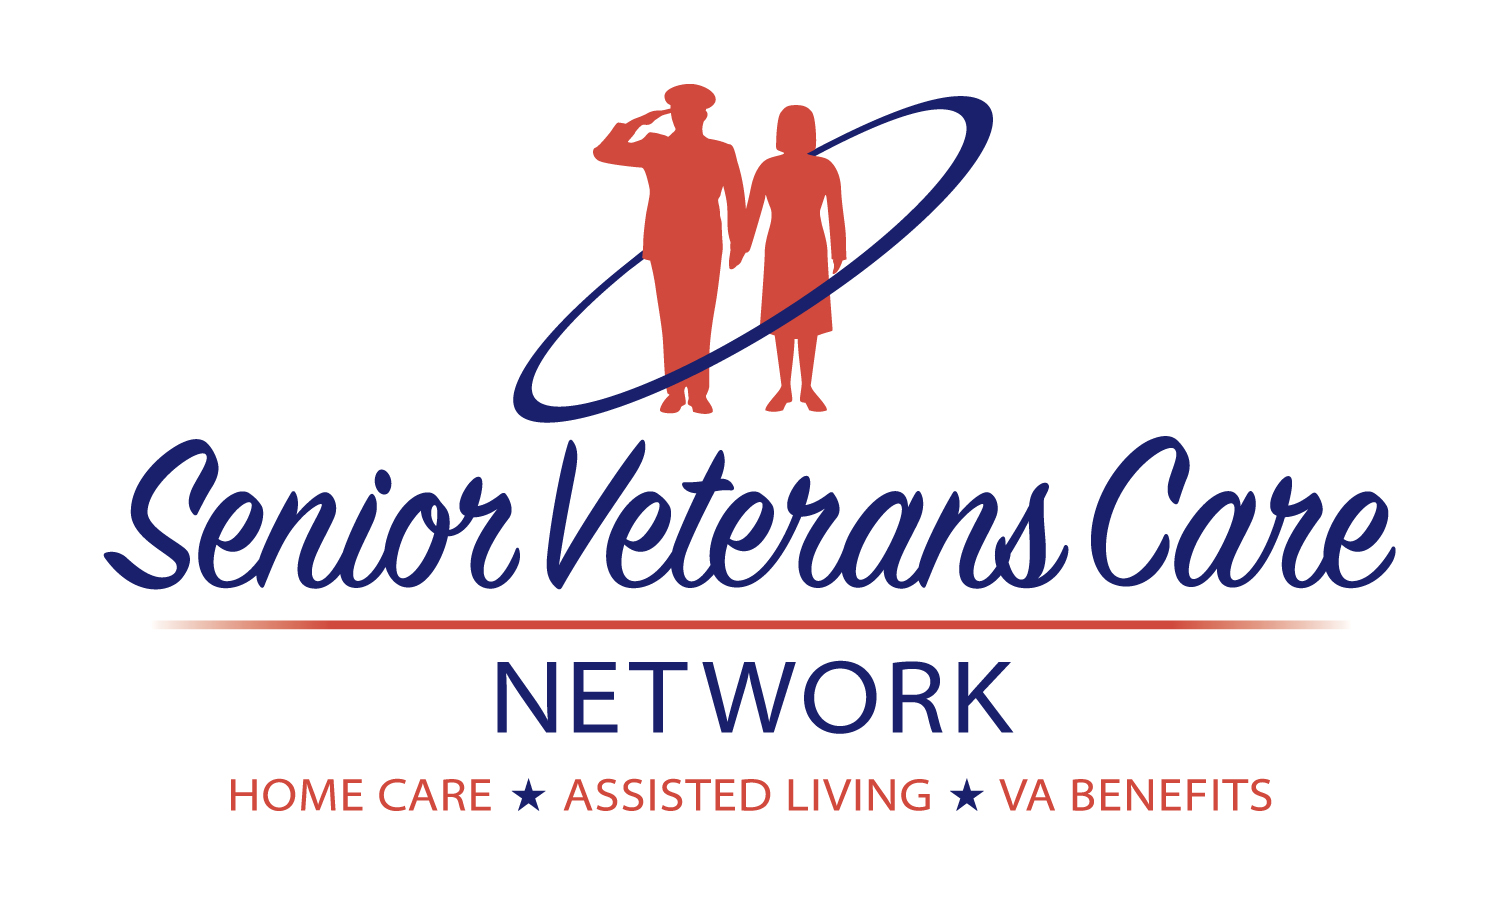 Senior Veterans Care Network